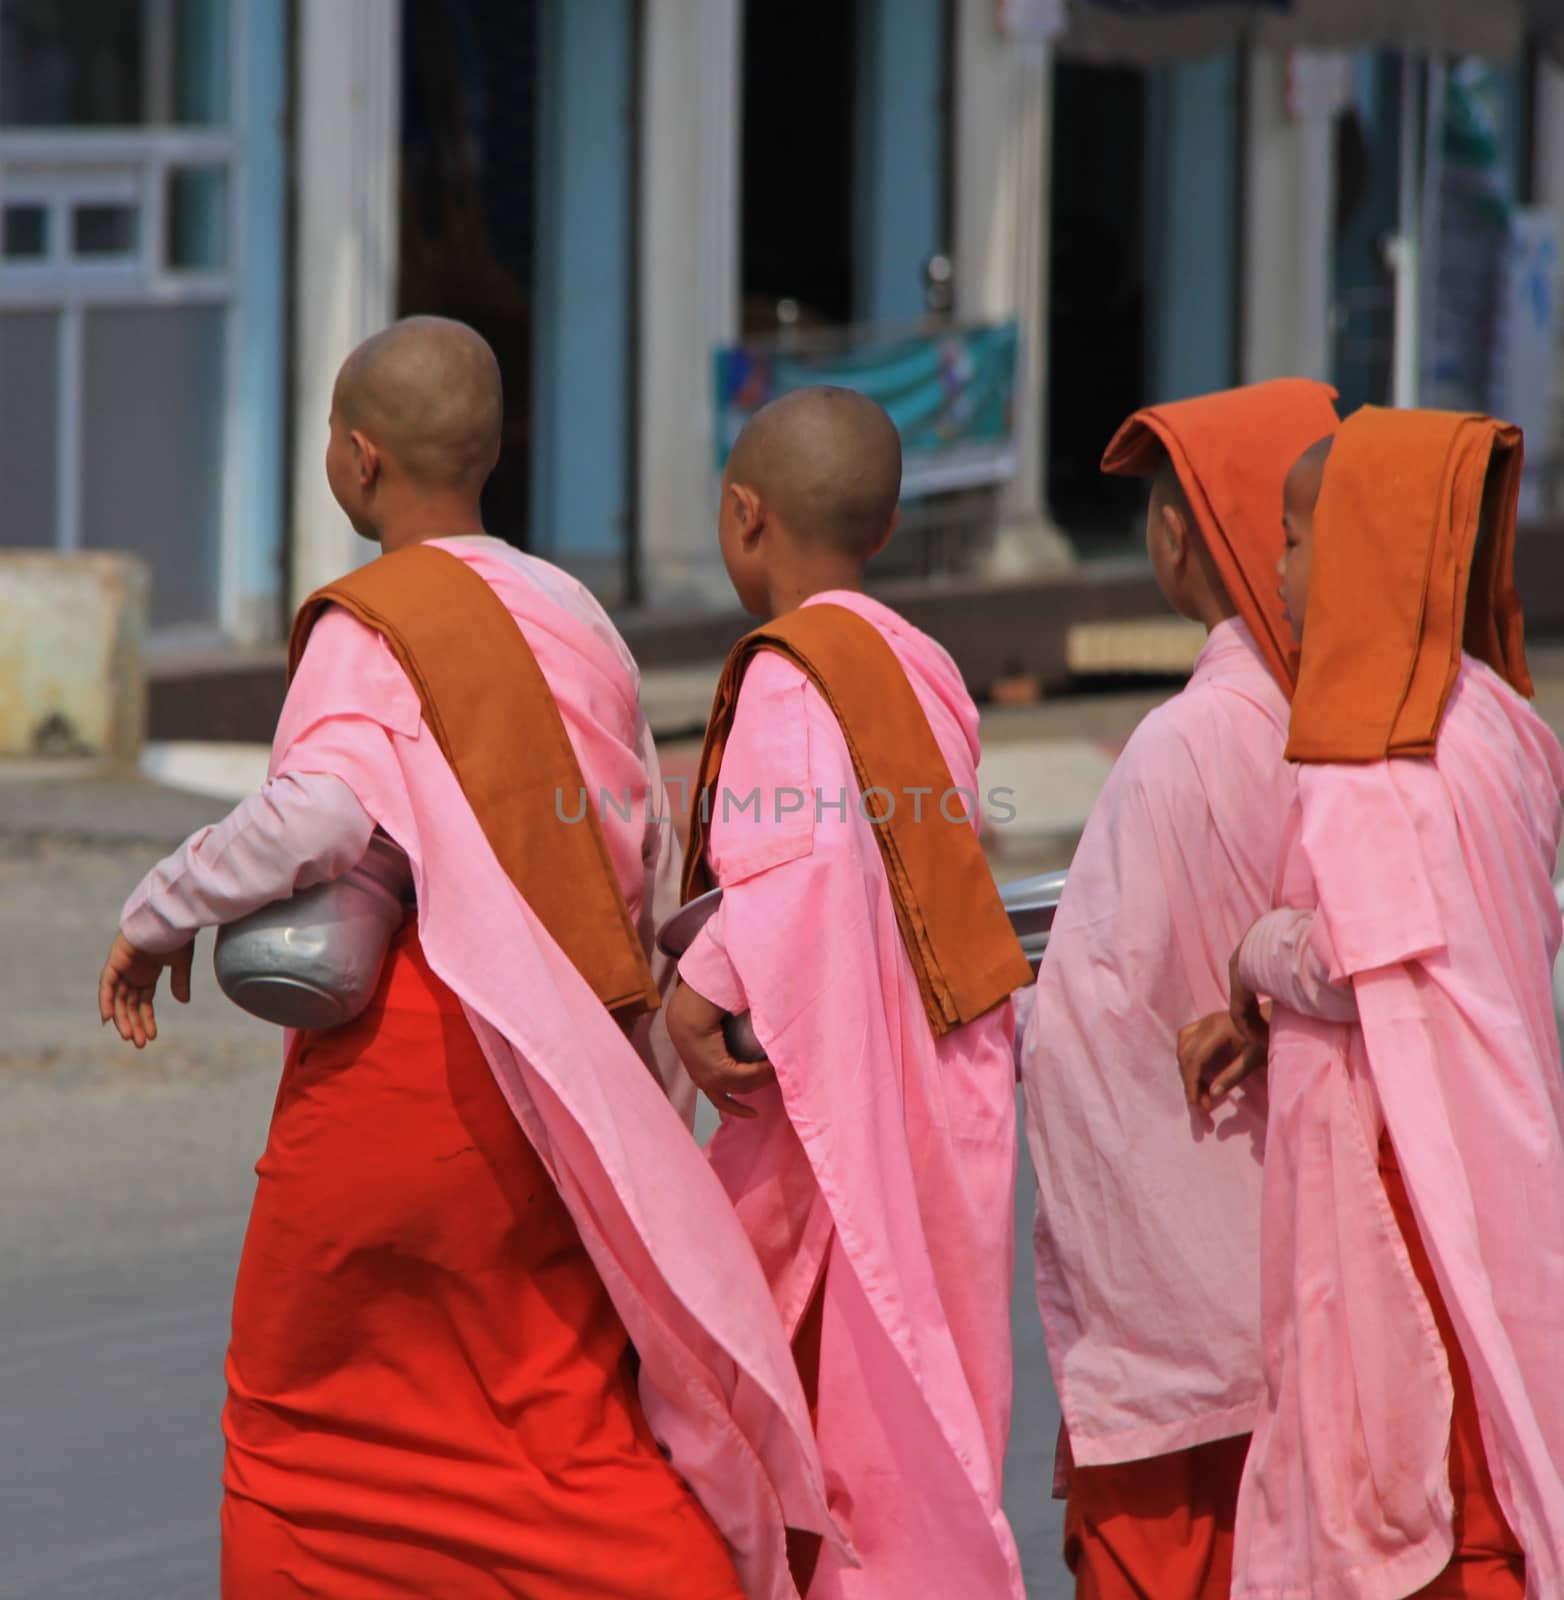 Buddhist Nuns by photocdn39